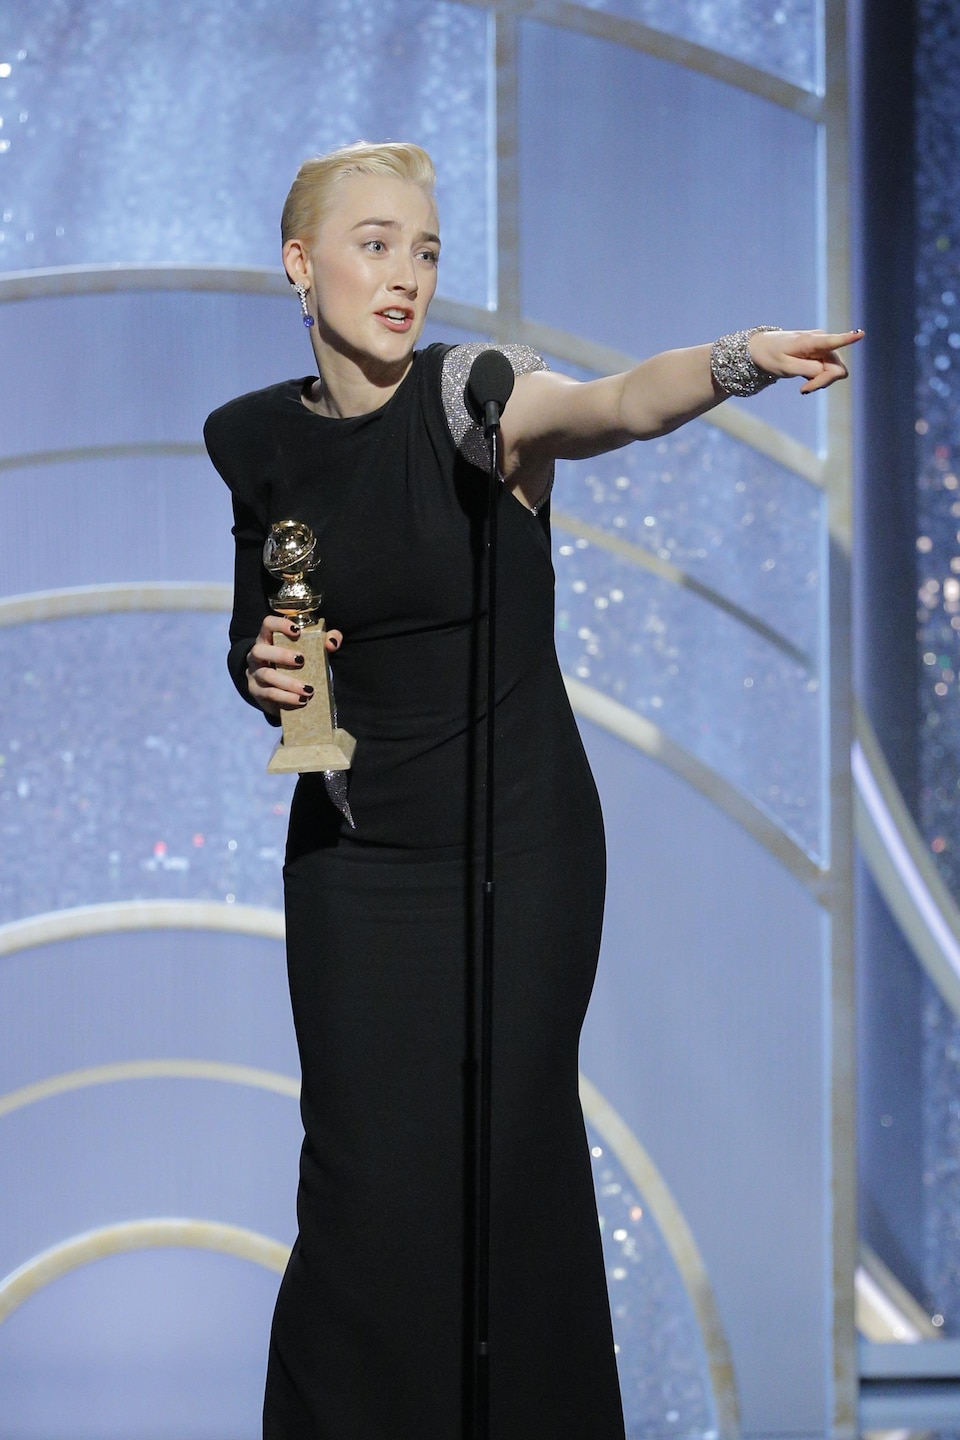 L'actrice Saoirse Ronan pointe quelqu'un du public pendant ses remerciements.